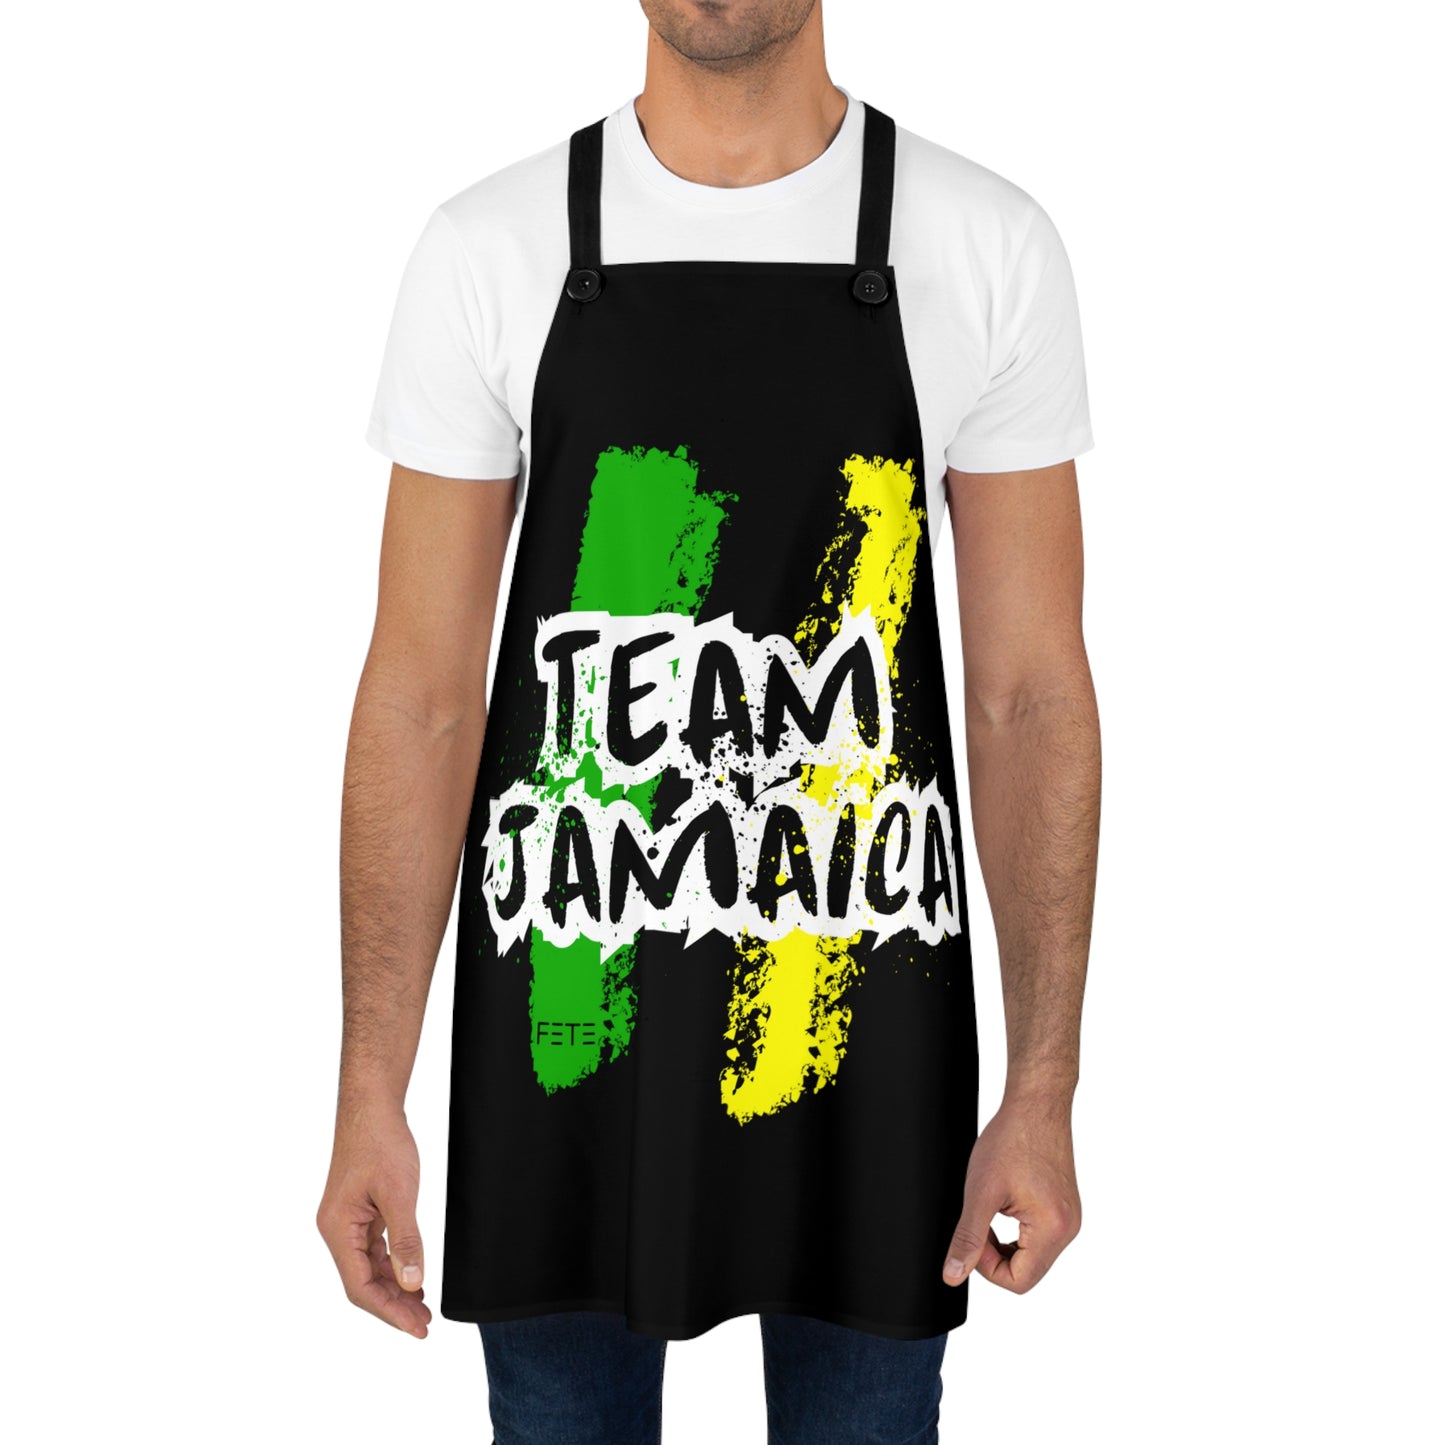 Team Jamaica Apron (AOP)